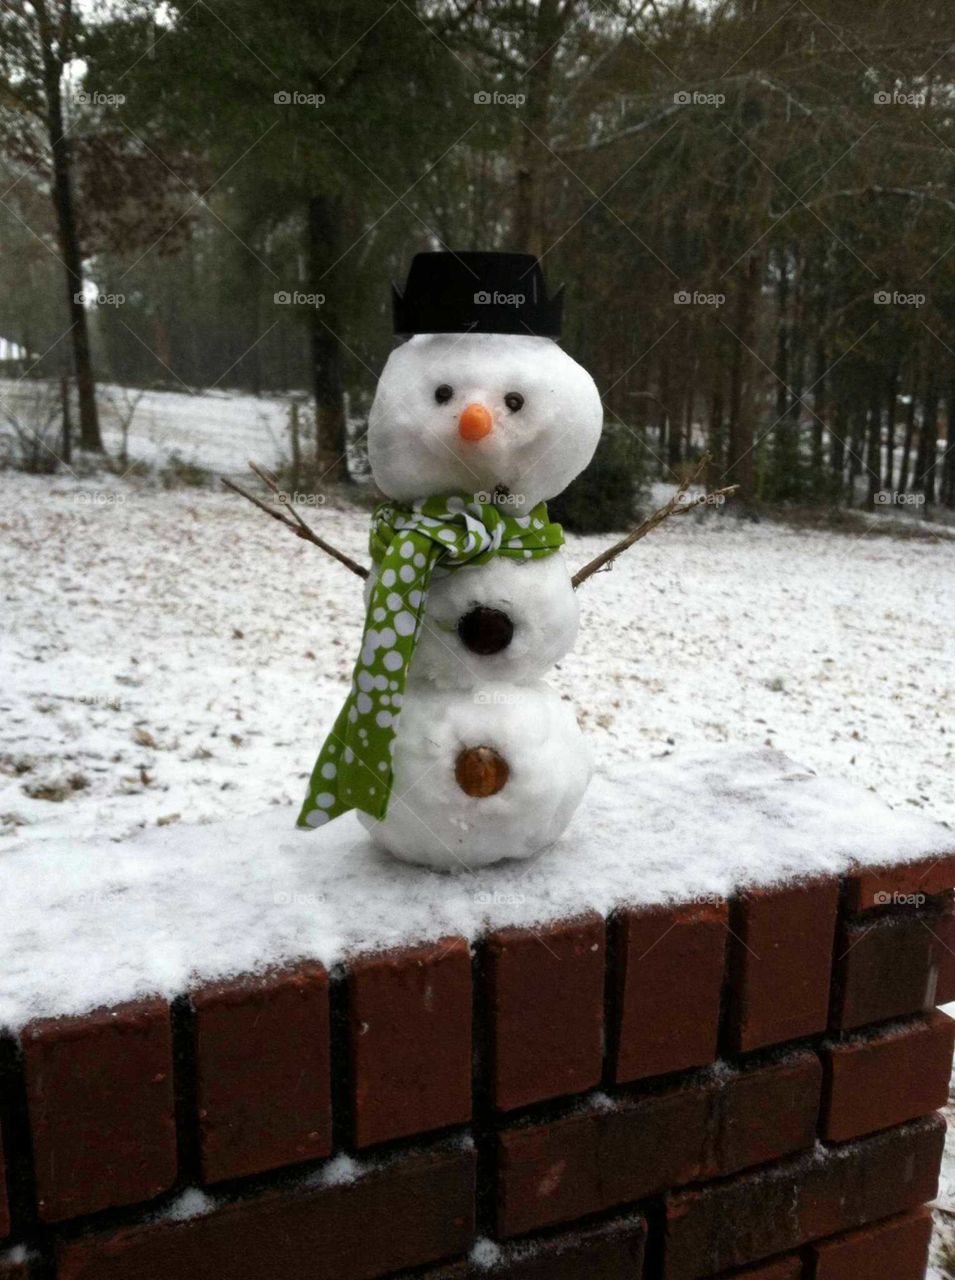 Olaf the snow man